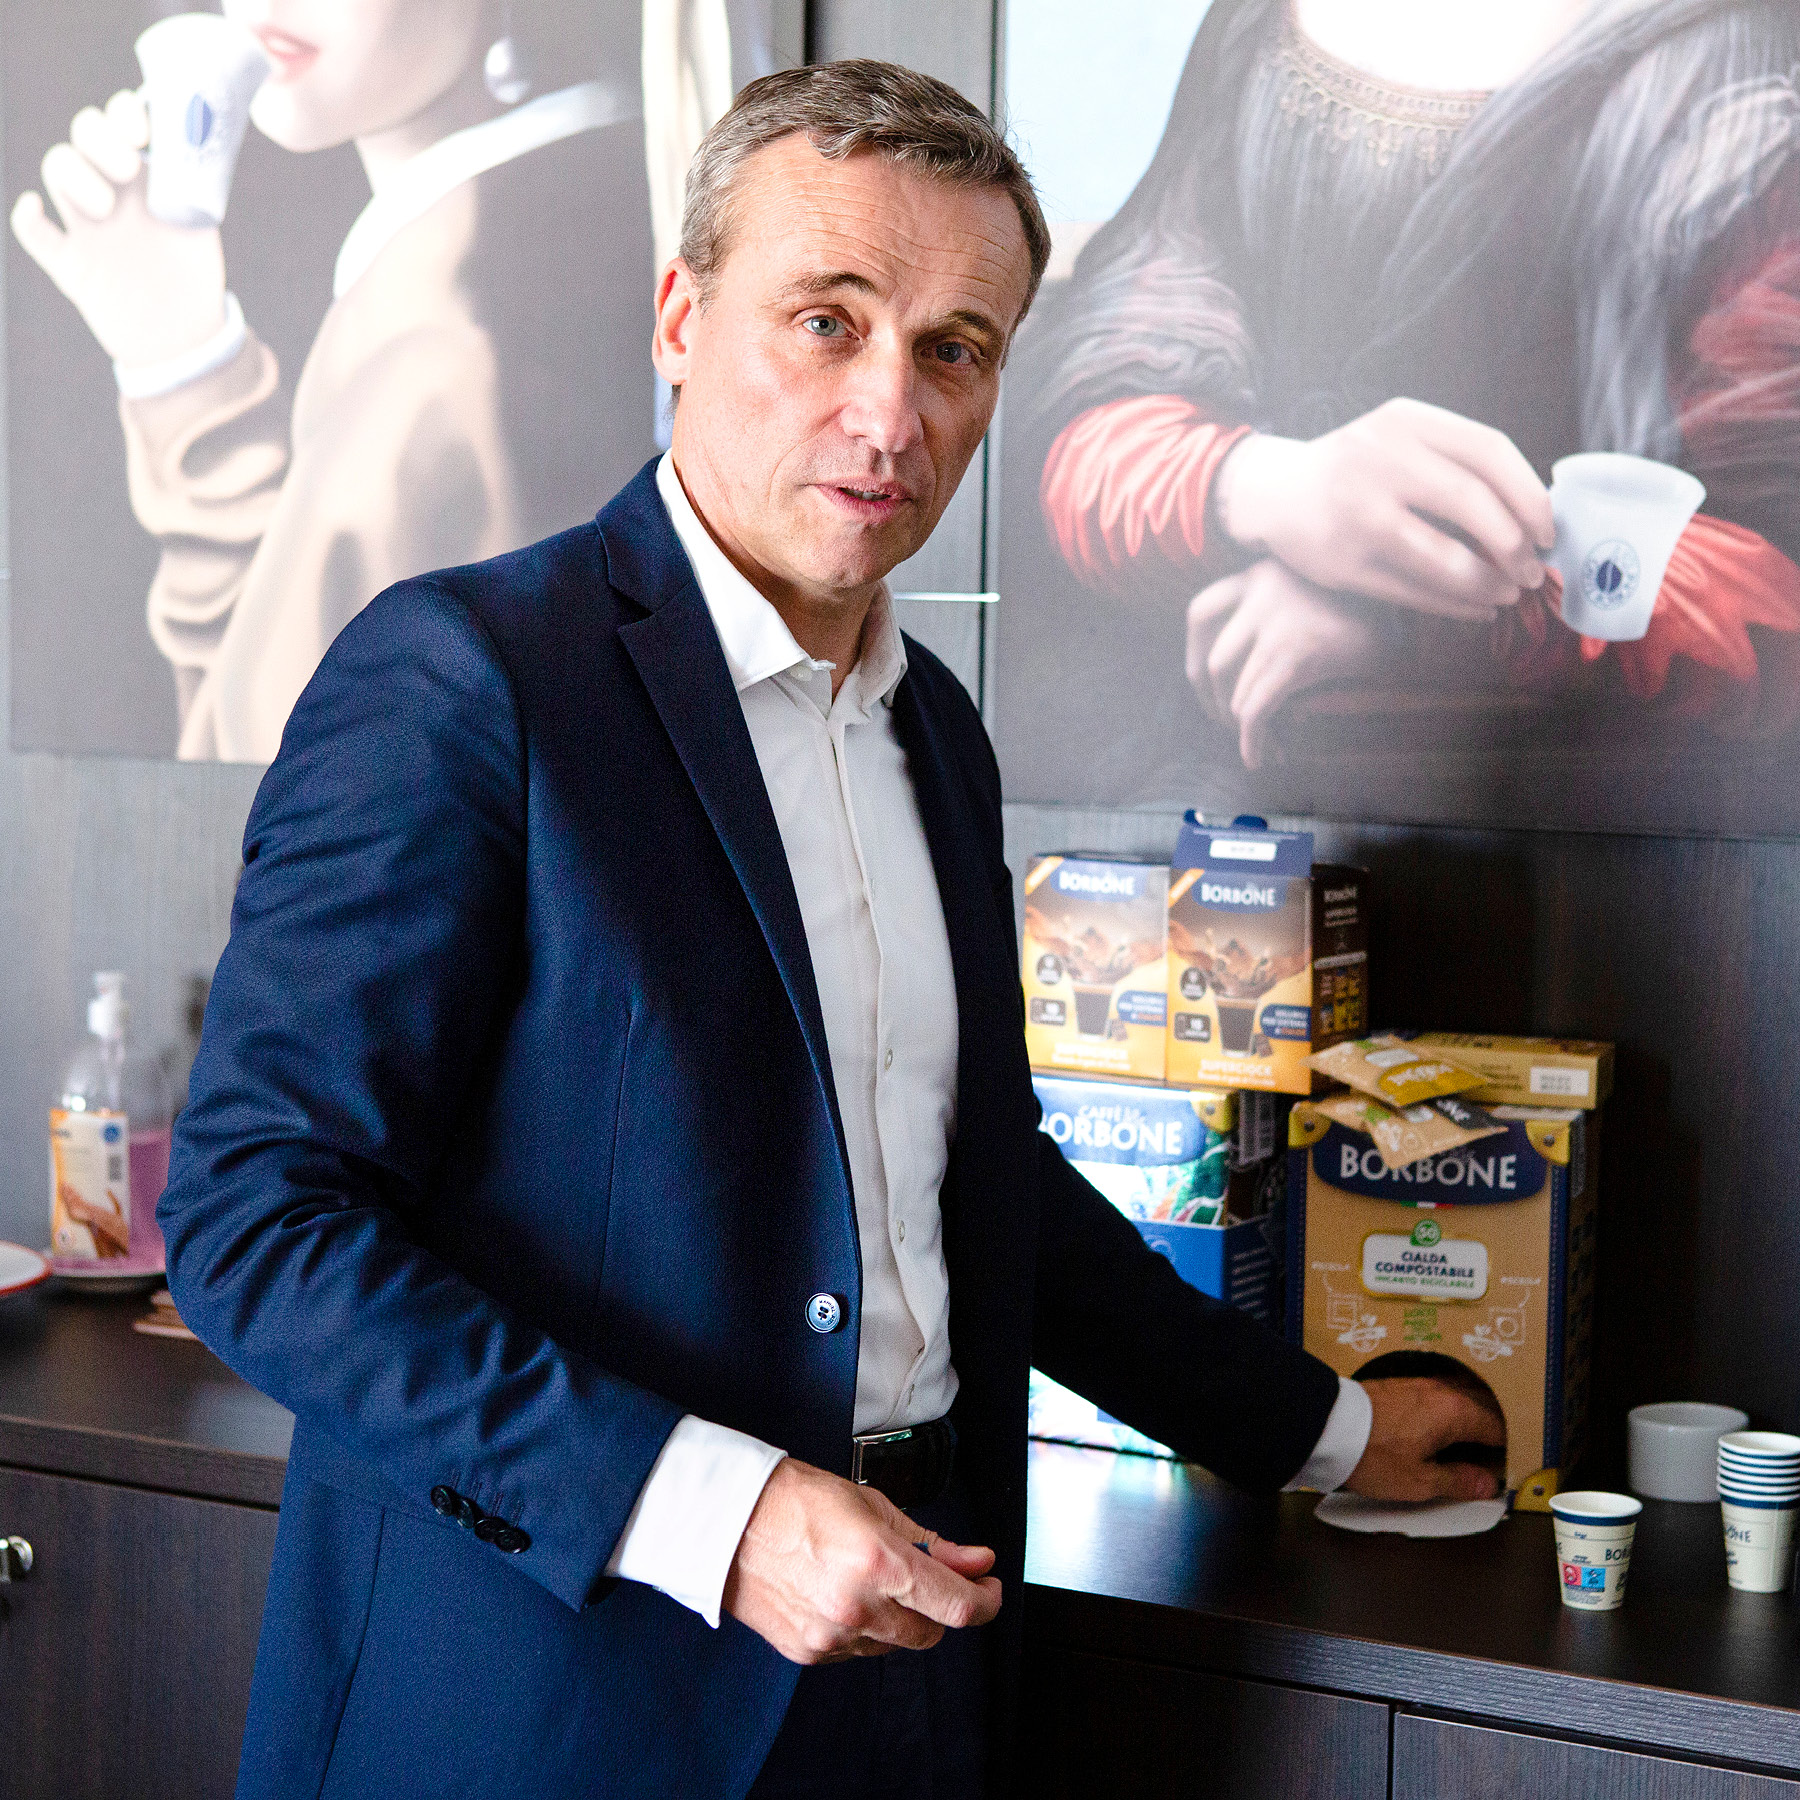 Marco Schiavon, CEO of Caffè Borbone